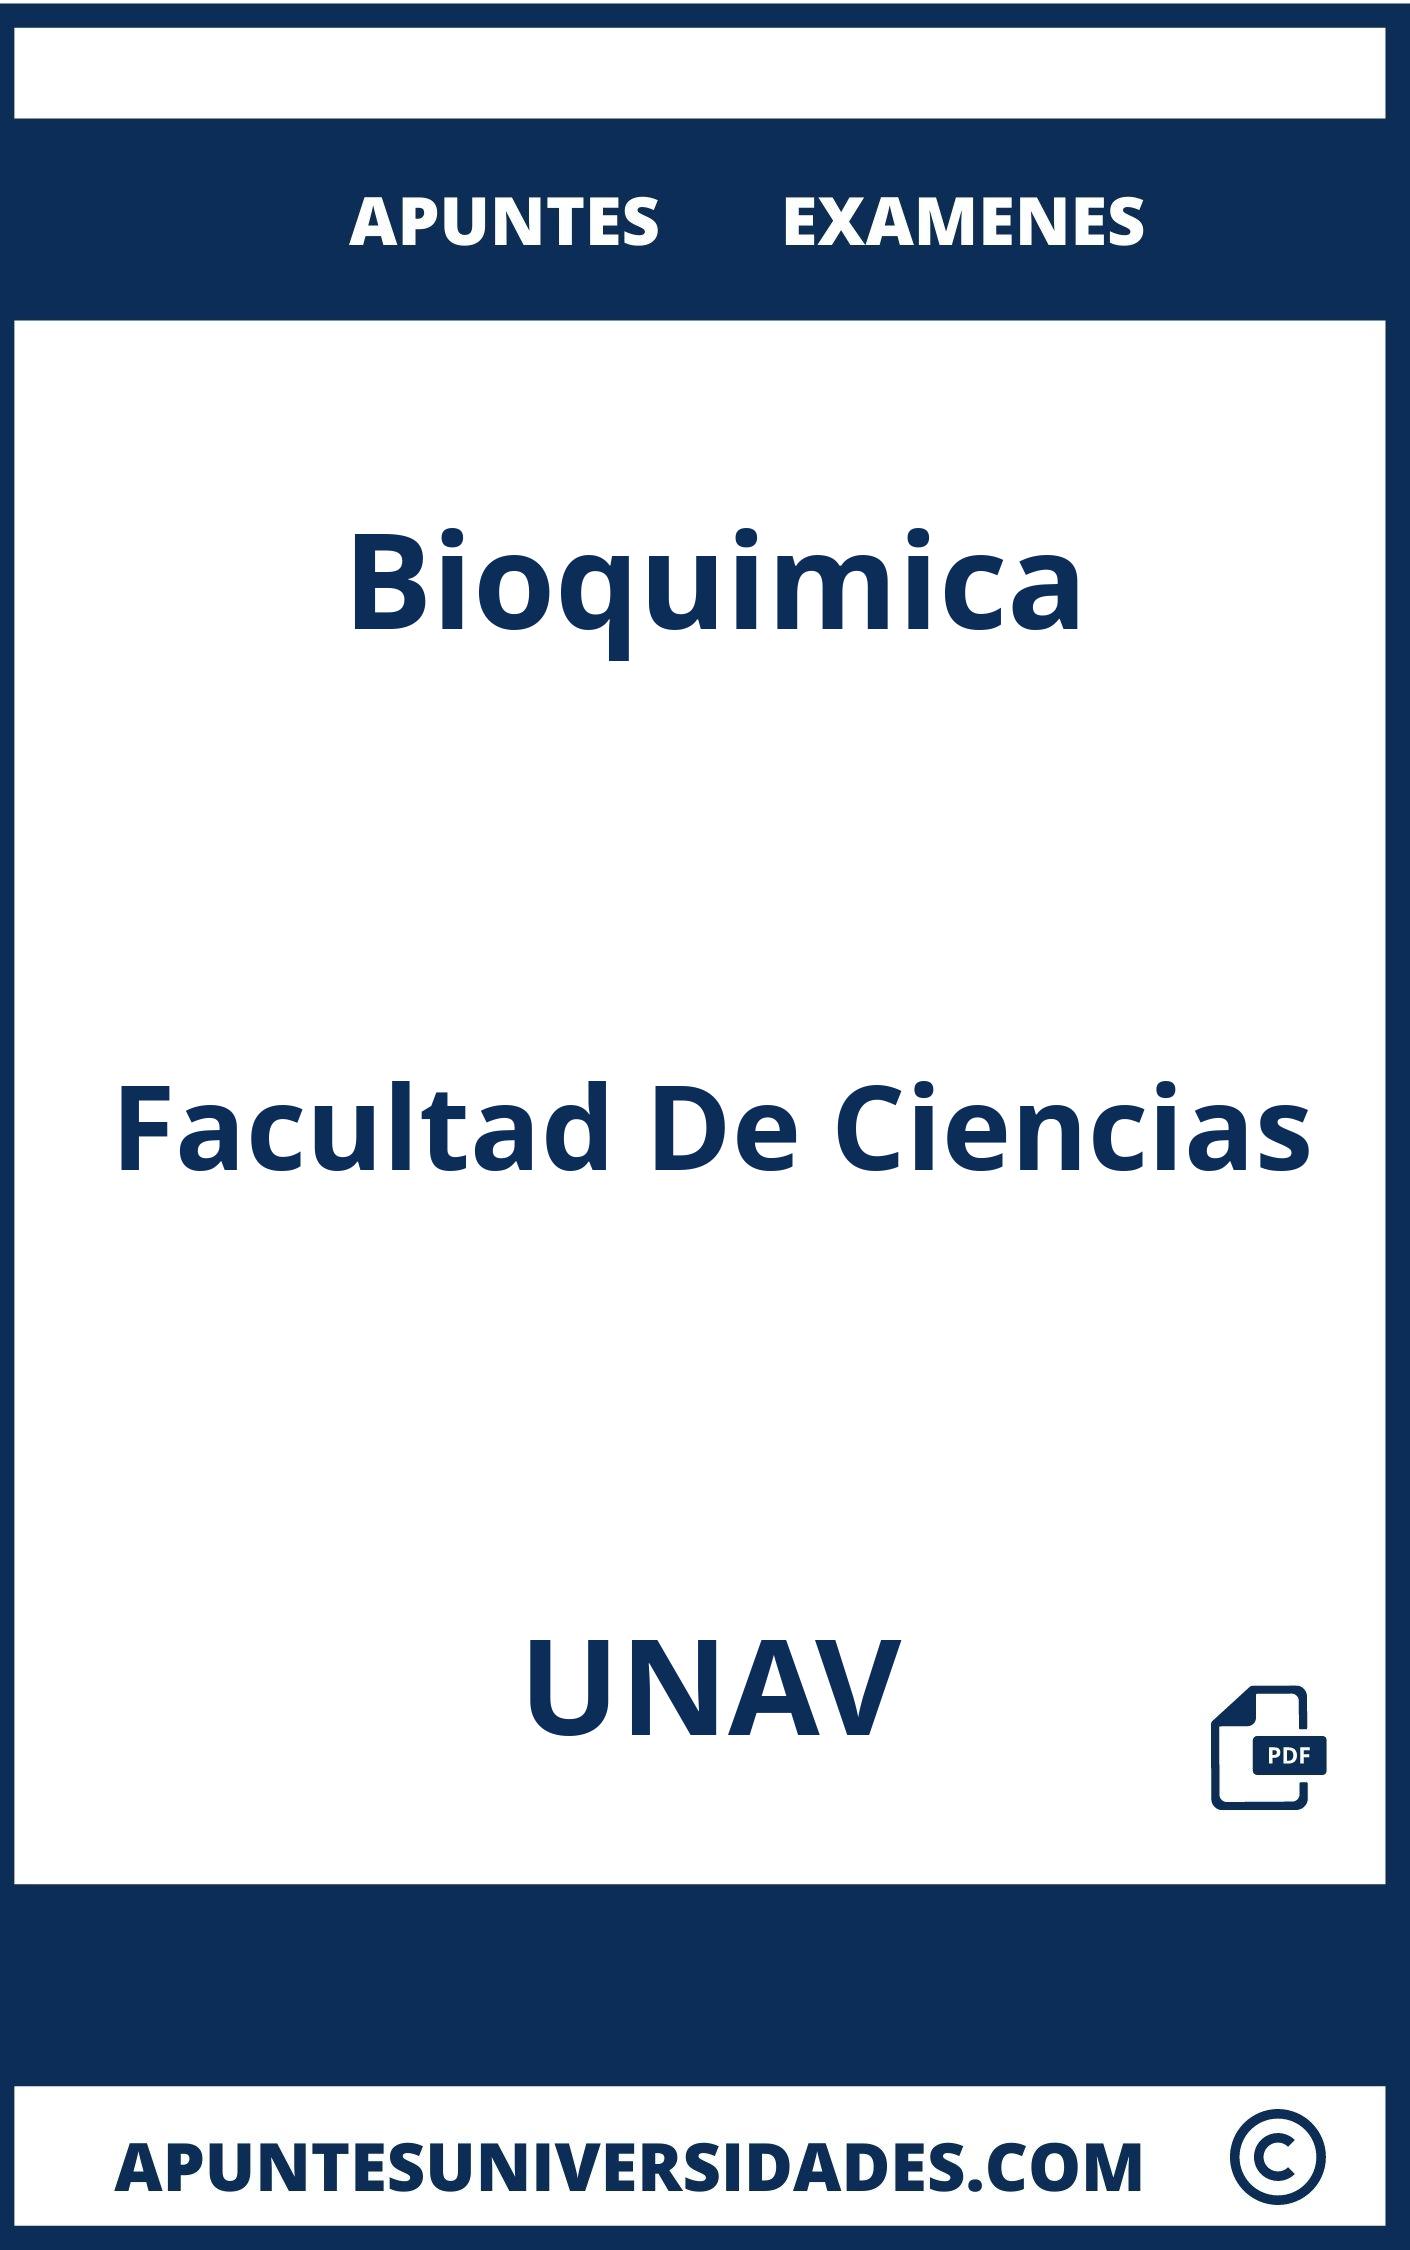 Examenes y Apuntes Bioquimica UNAV